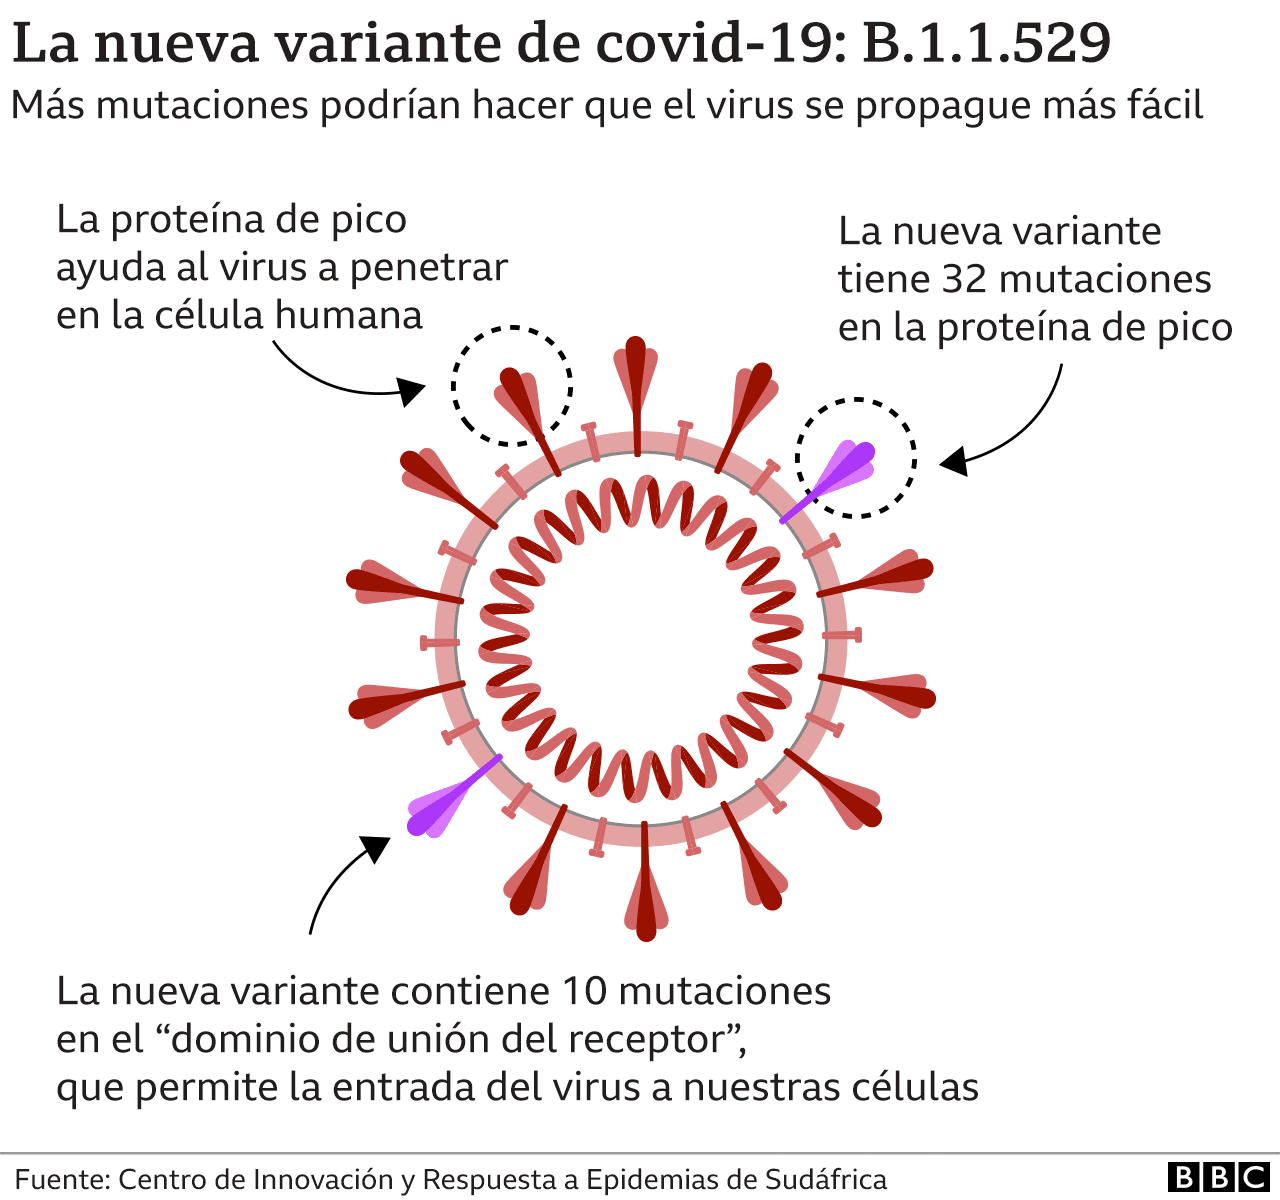 Omicron: las razones por las que preocupa la variante del coronavirus altamente mutada hallada en Sudáfrica - BBC News Mundo